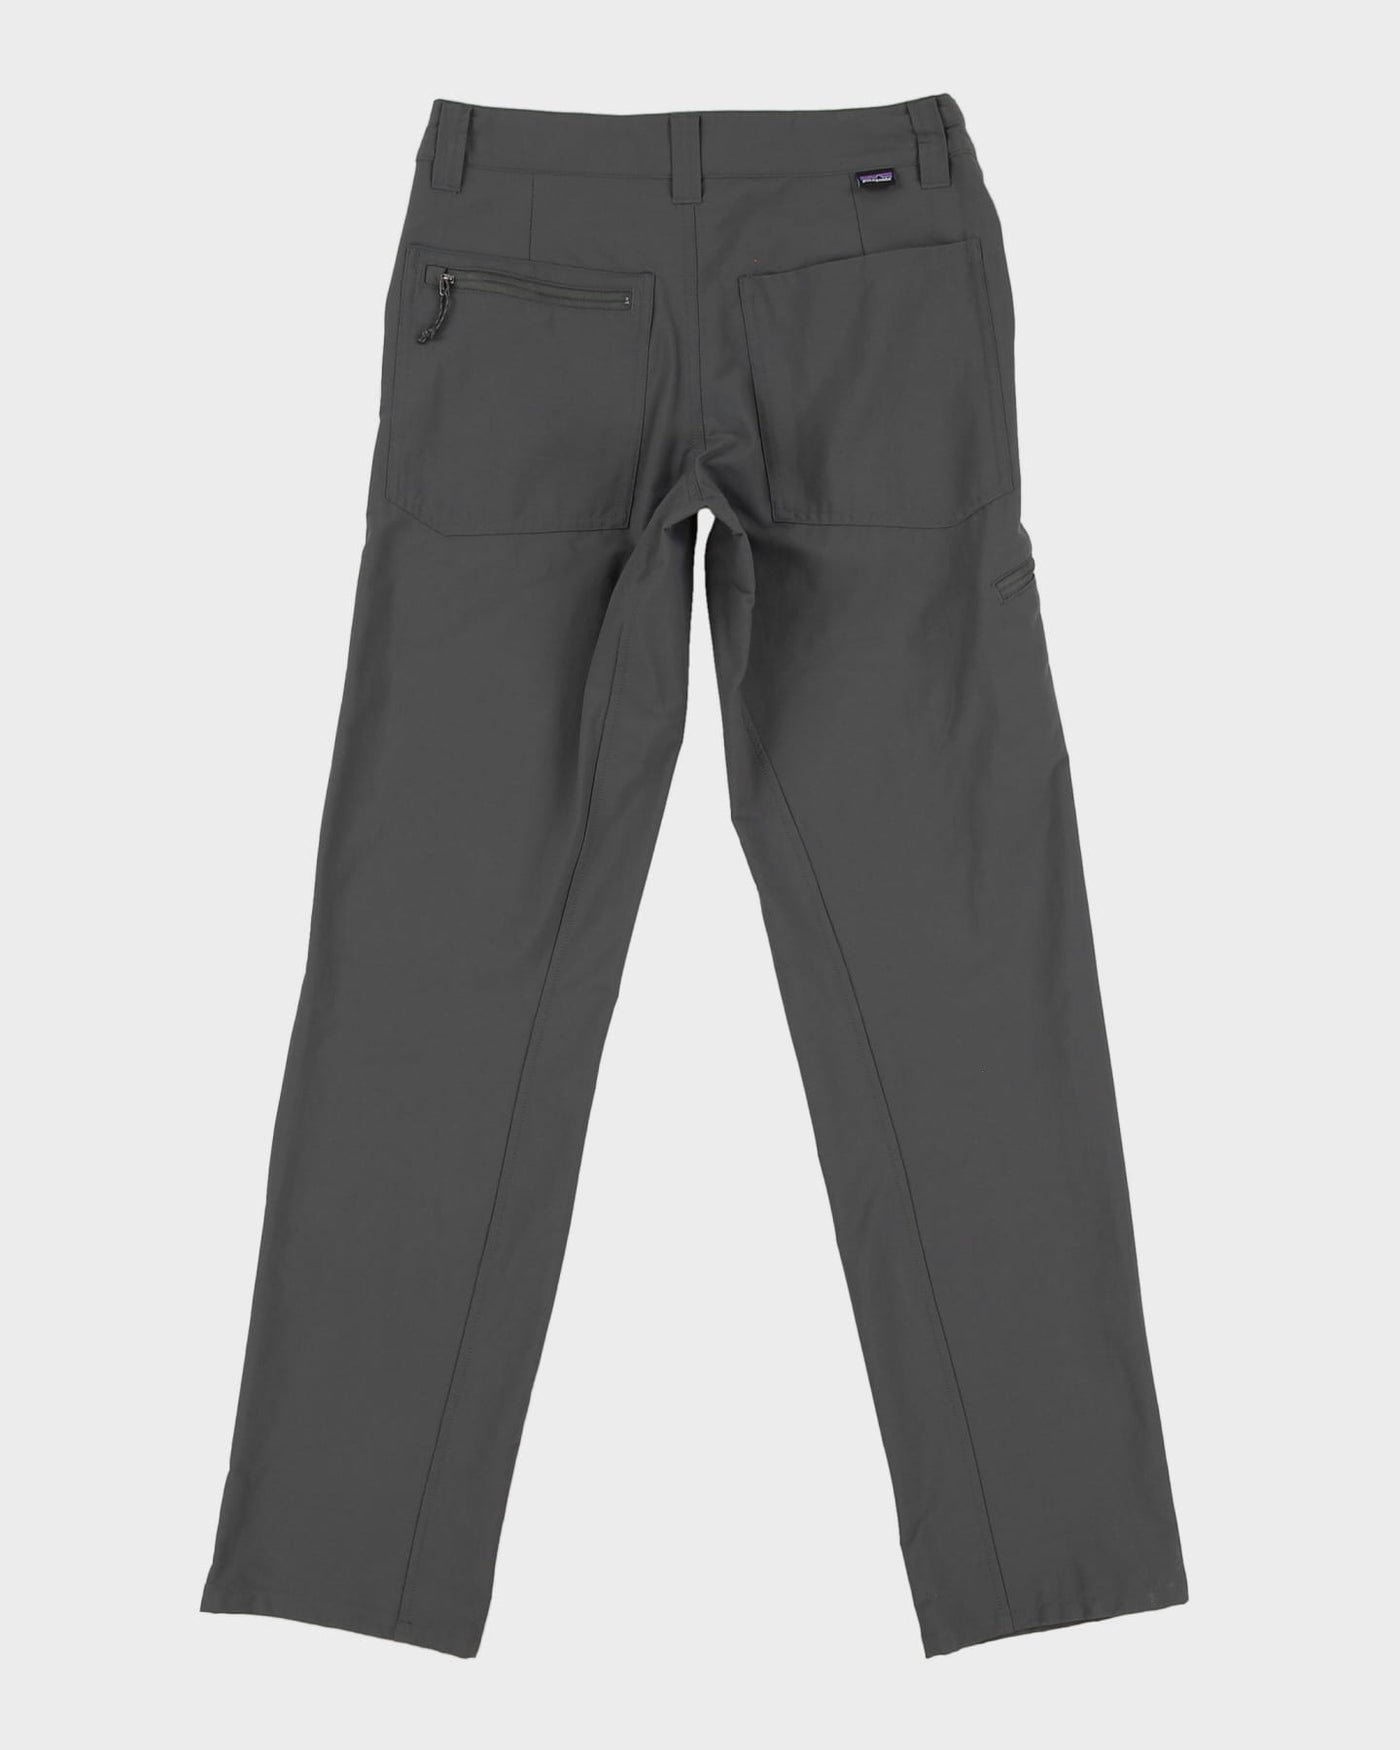 Patagonia Grey Tech / Utility Trousers - W28